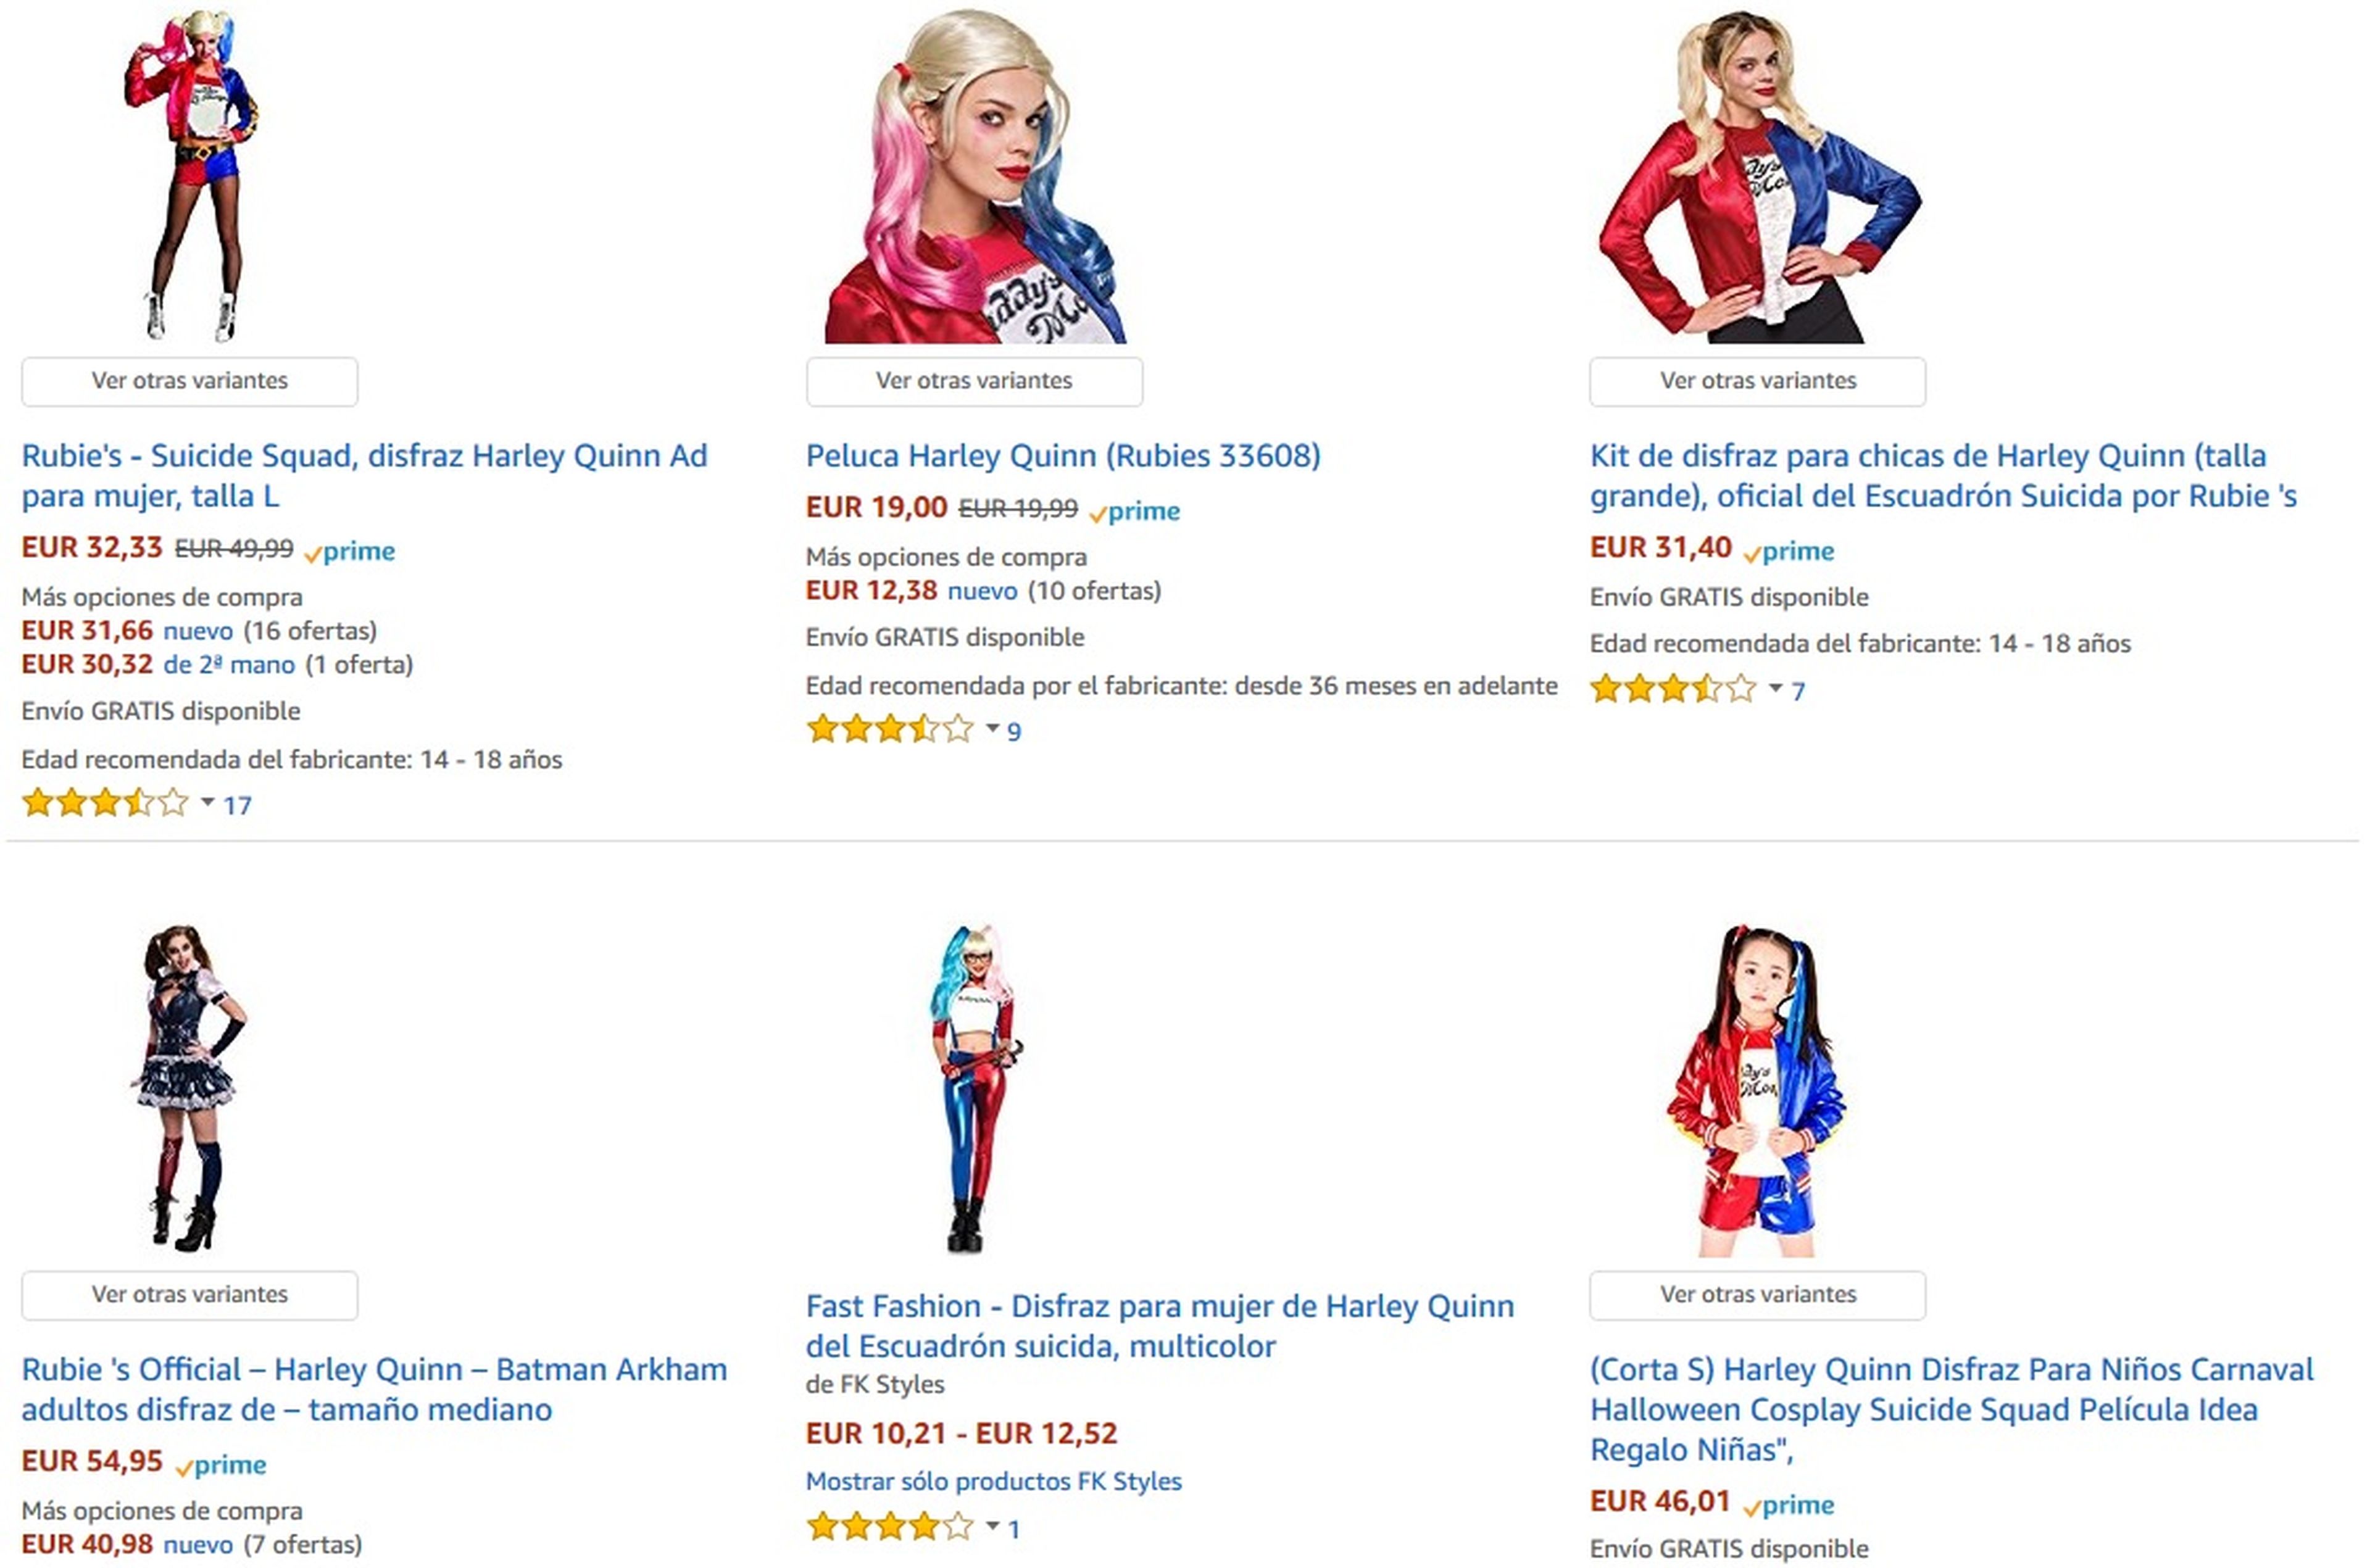 Disfraces de Harley Quinn en Amazon